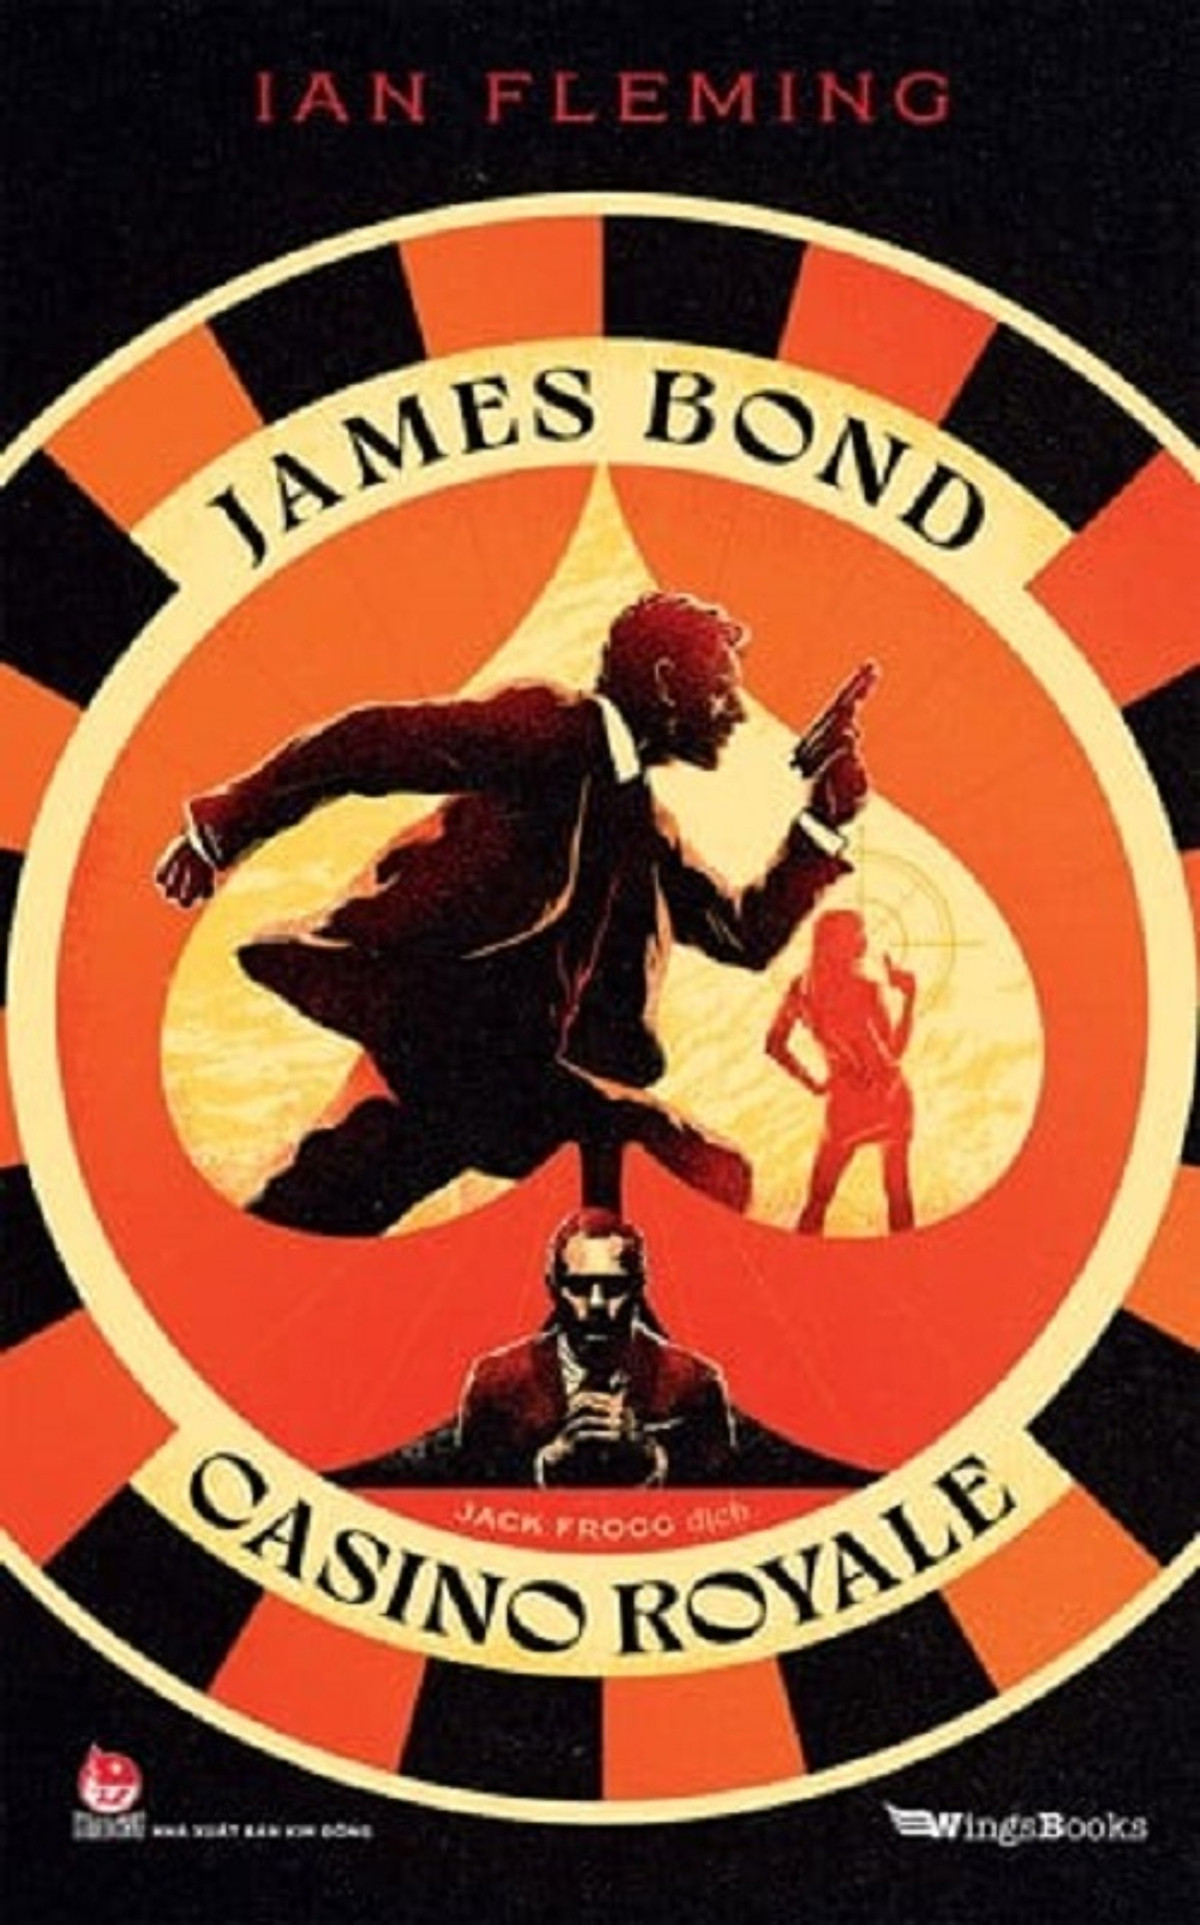 Sách - Casino Royale (James Bond)